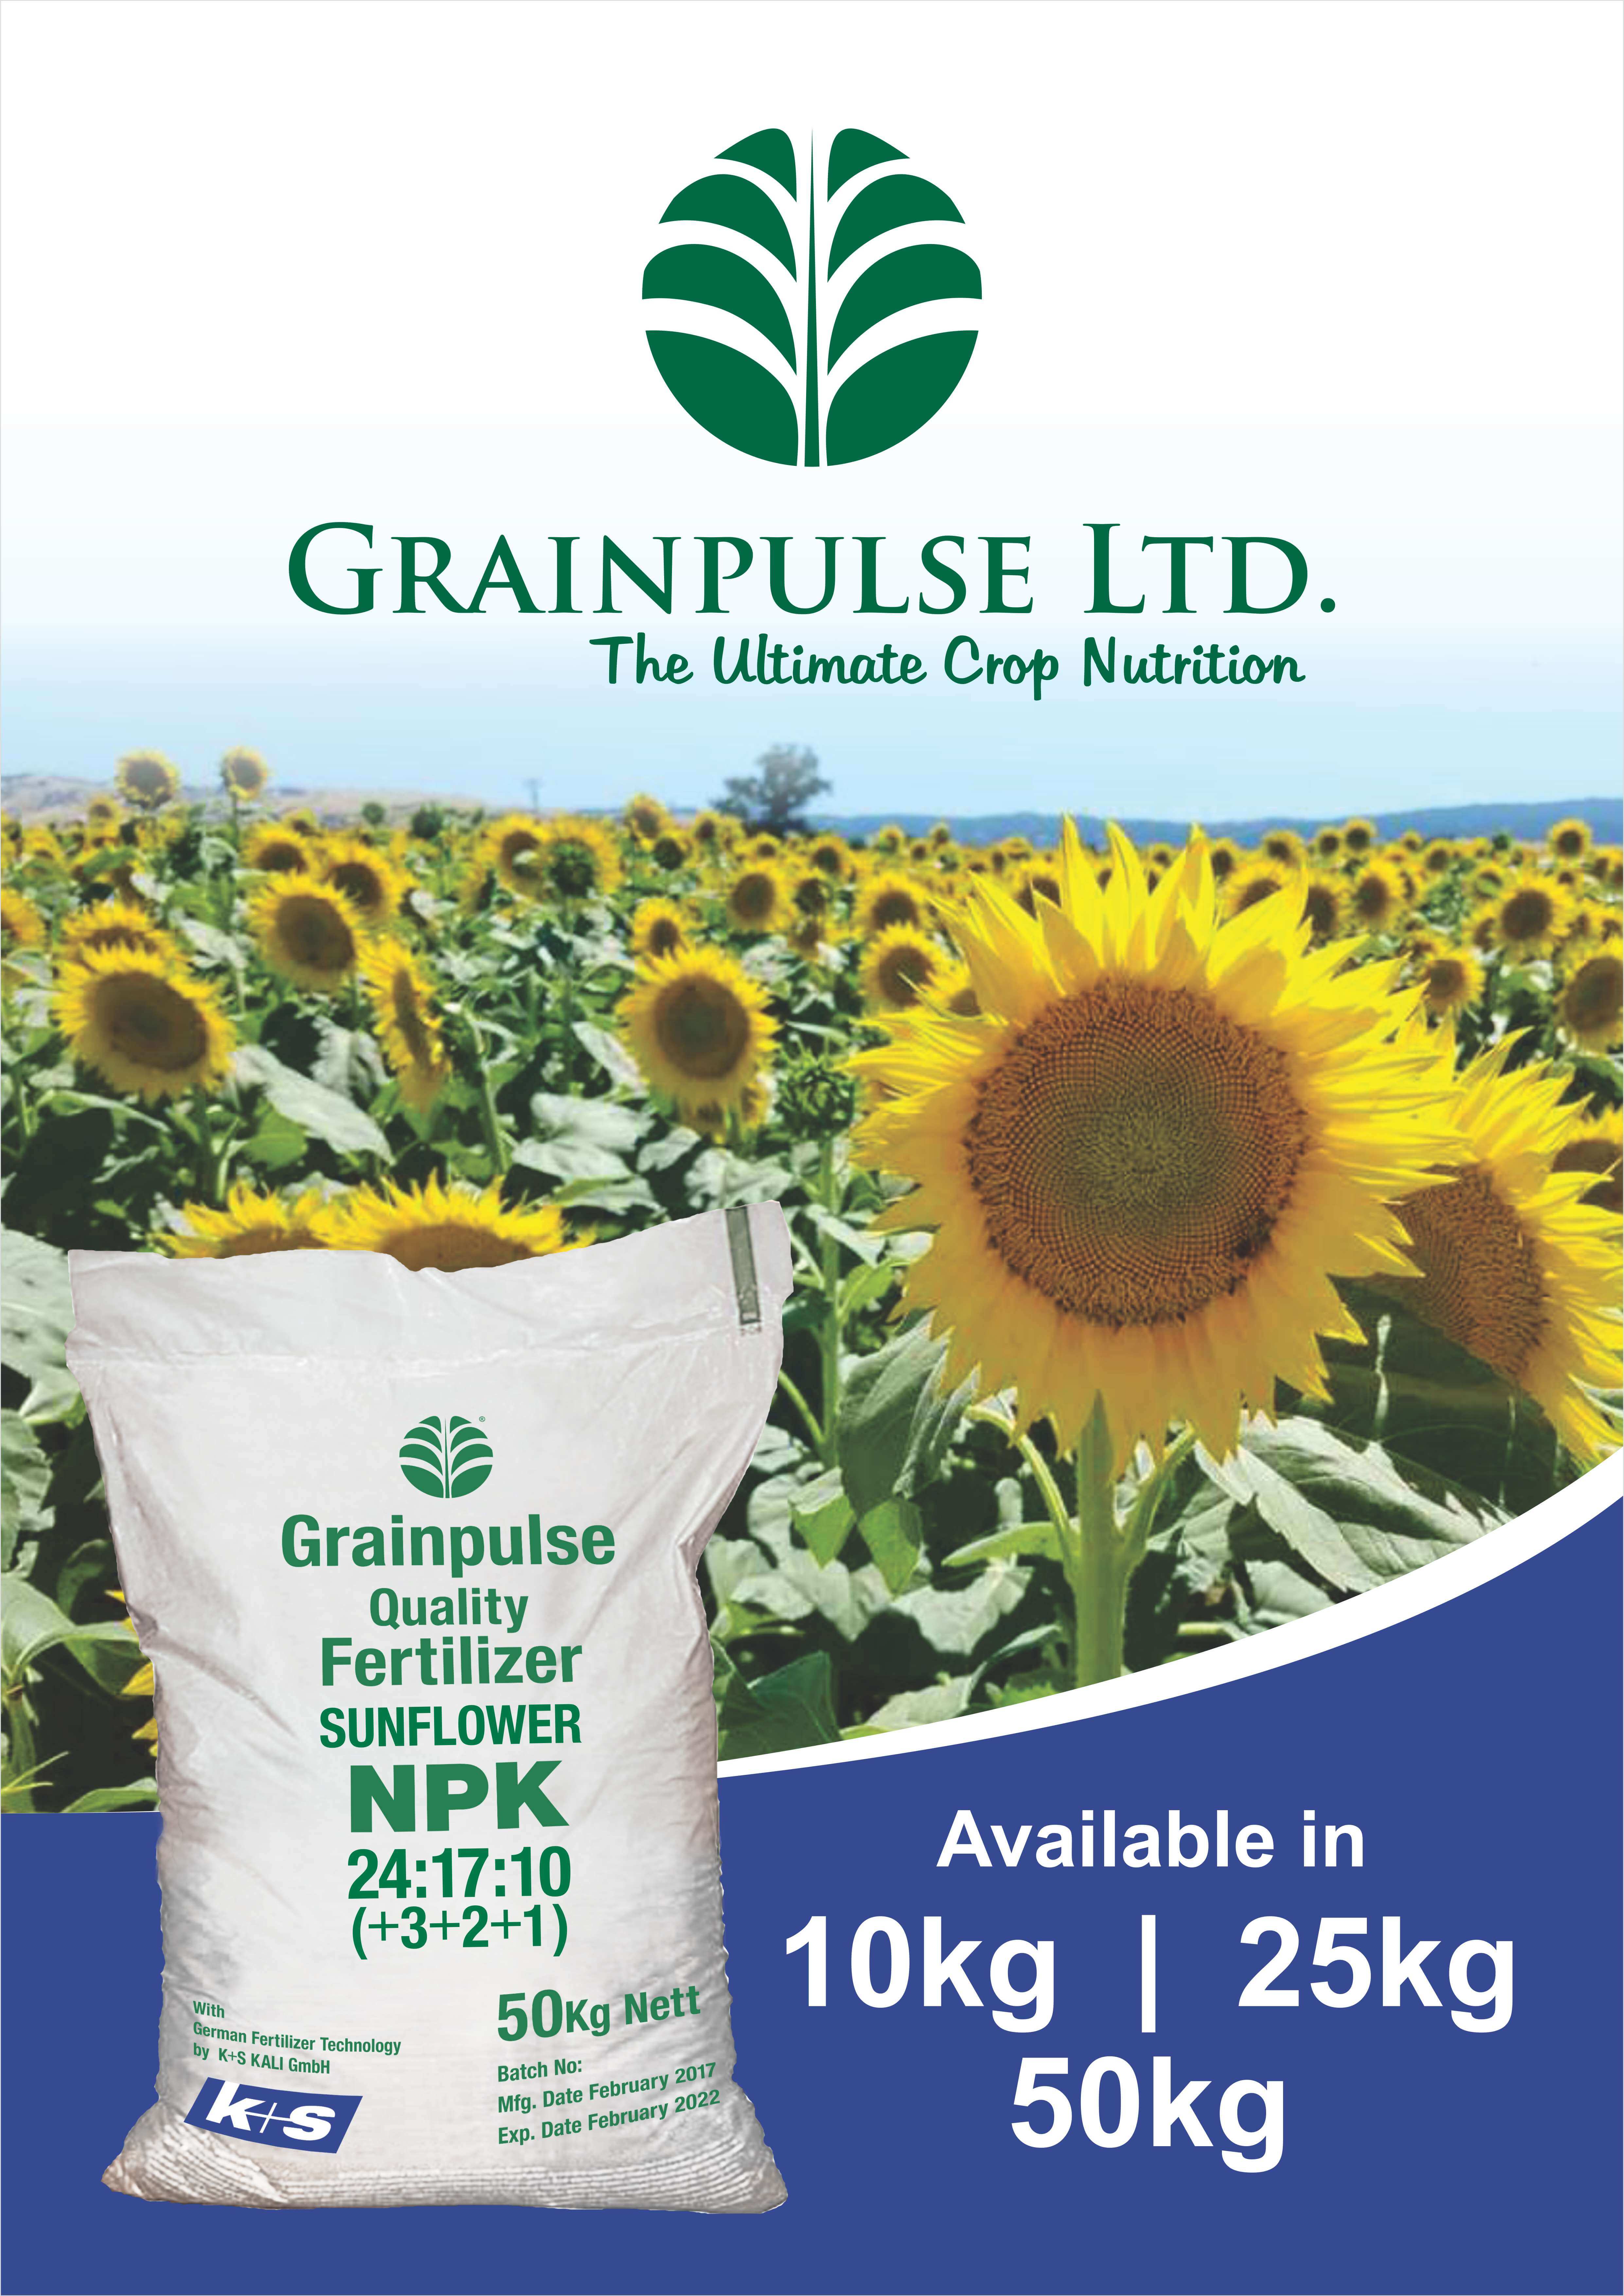 Image of Bag of sunflower fertilizer